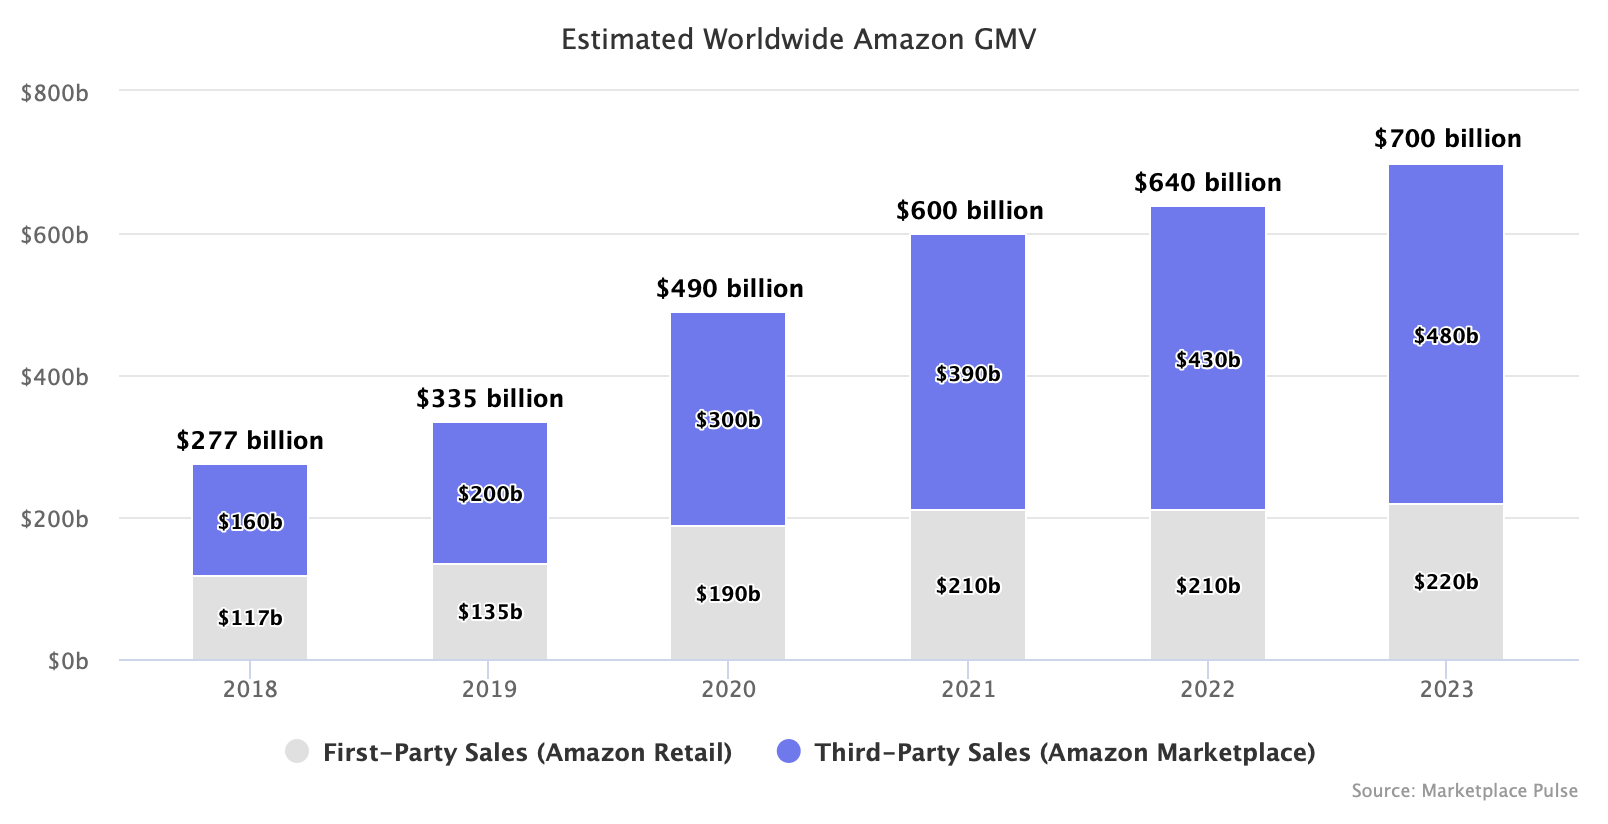 Estimated Worldwide Amazon GMV